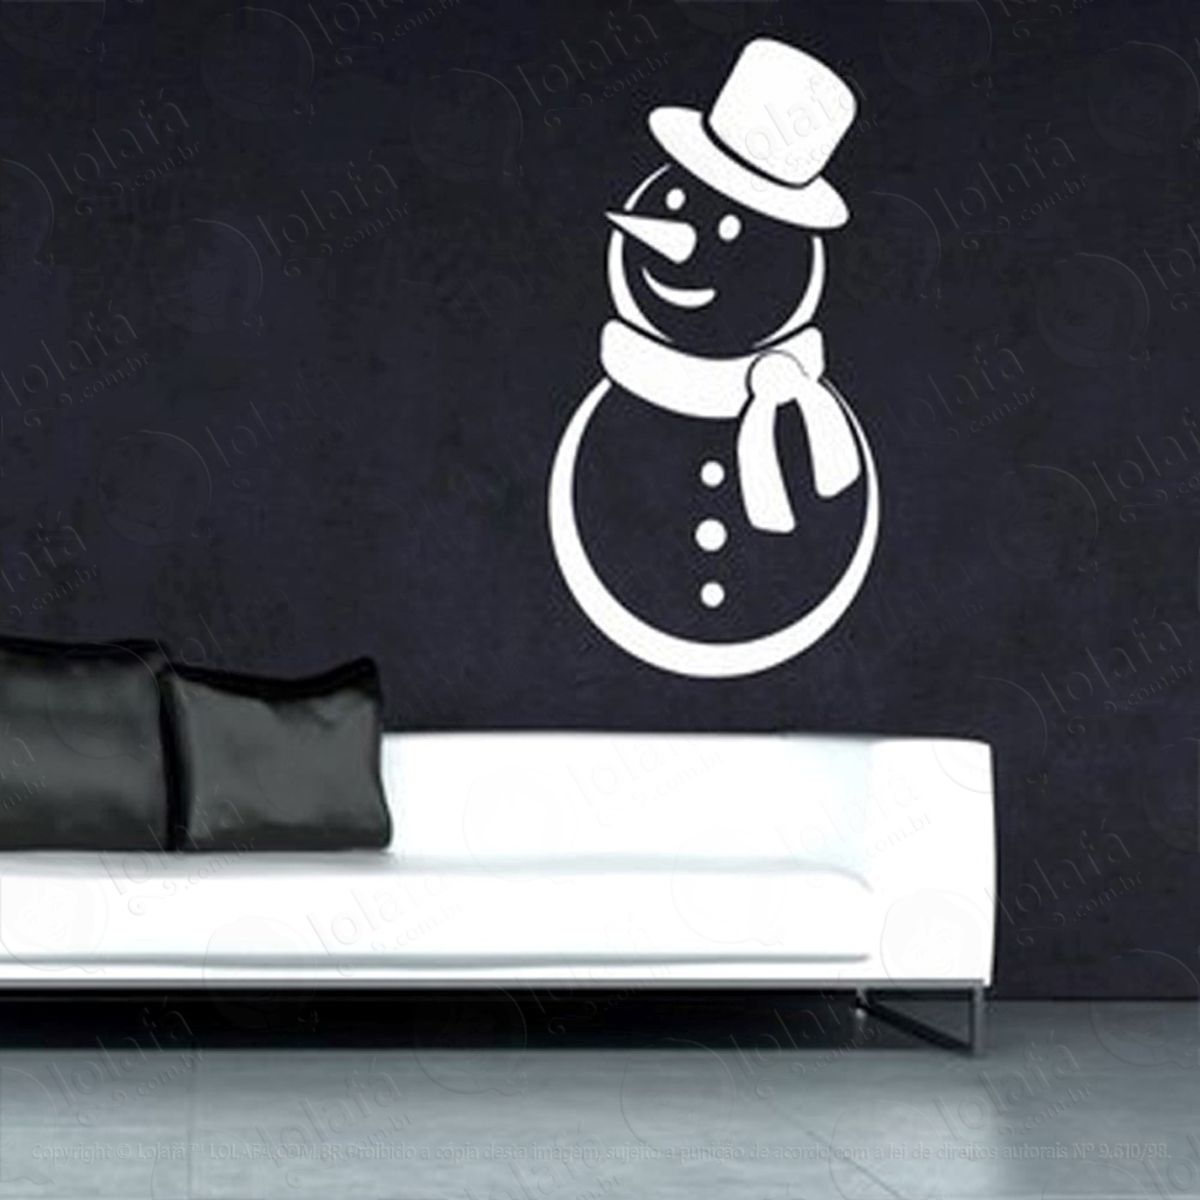 snowman adesivo de natal para vitrine, parede, porta de vidro - decoração natalina mod:250